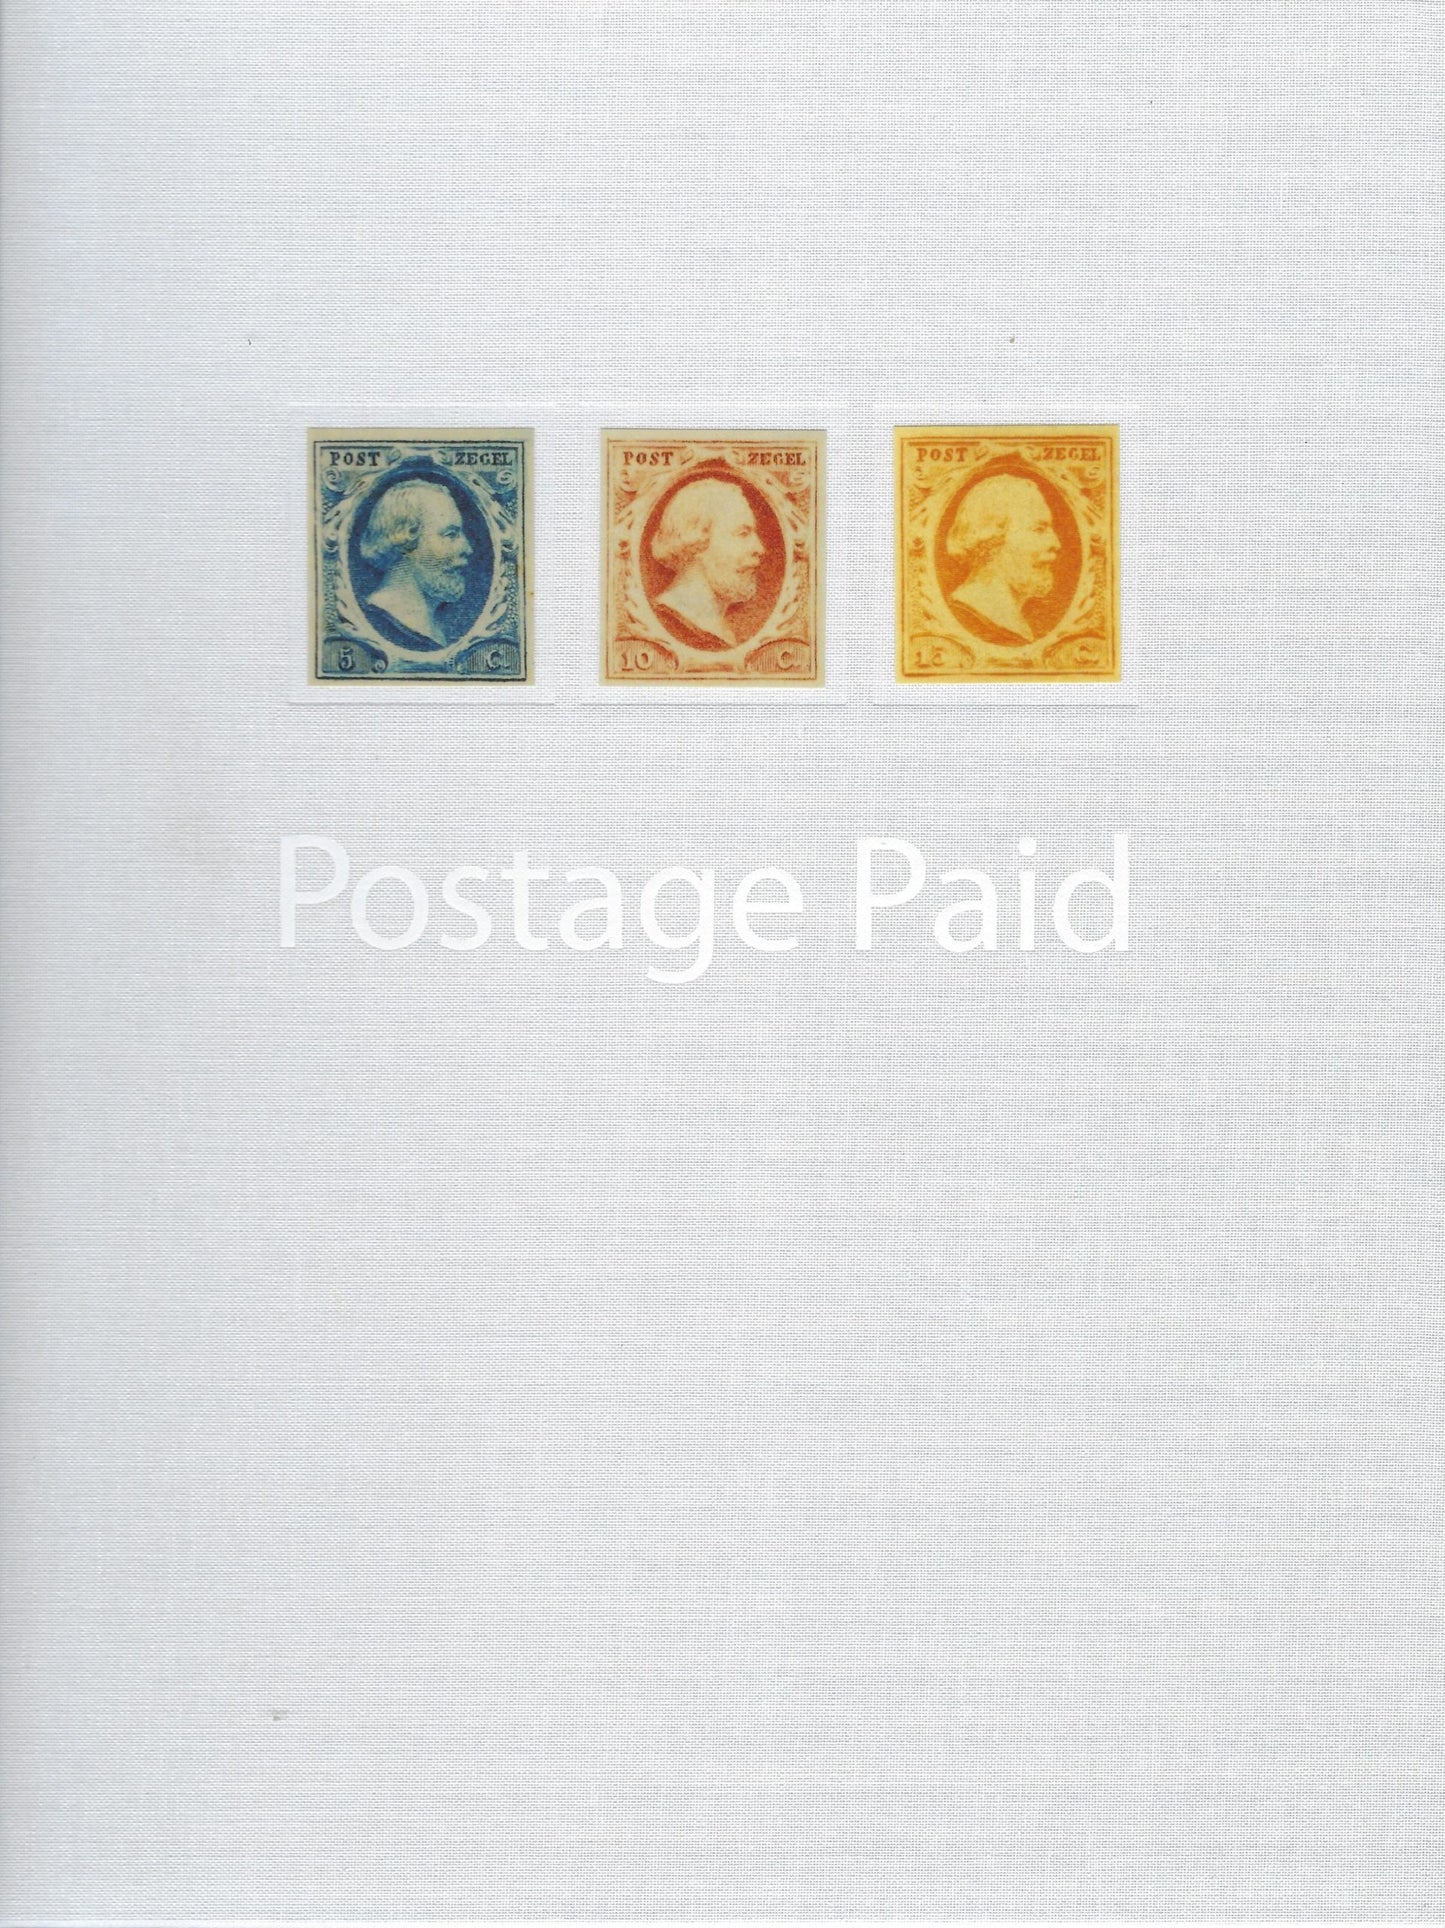 Postage paid